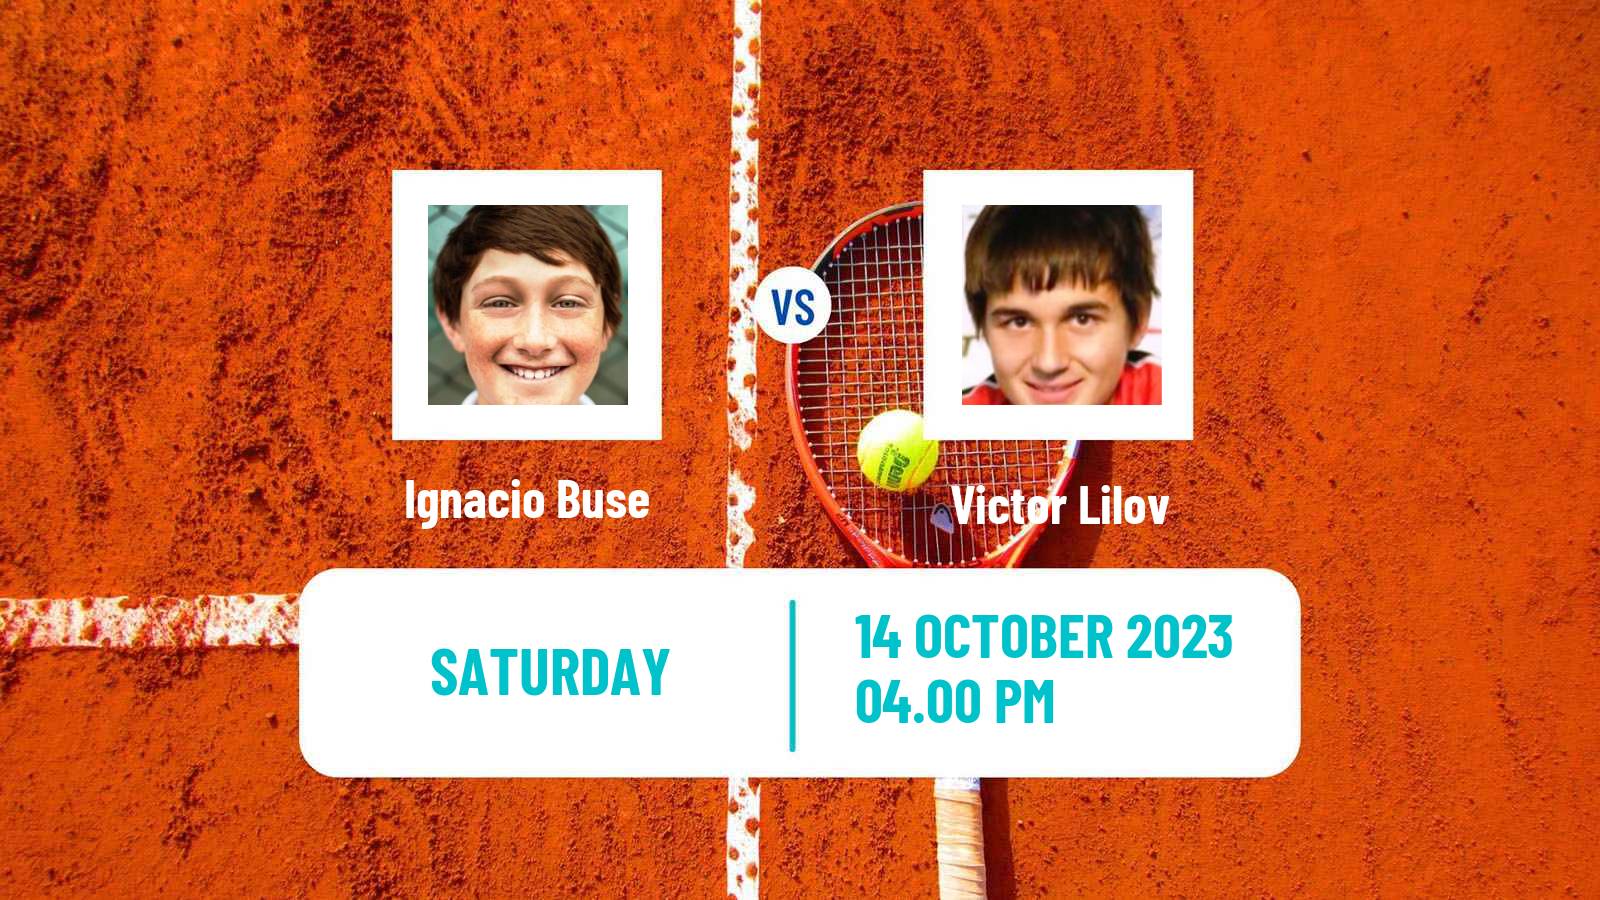 Tennis ITF M25 Zapopan Men Ignacio Buse - Victor Lilov